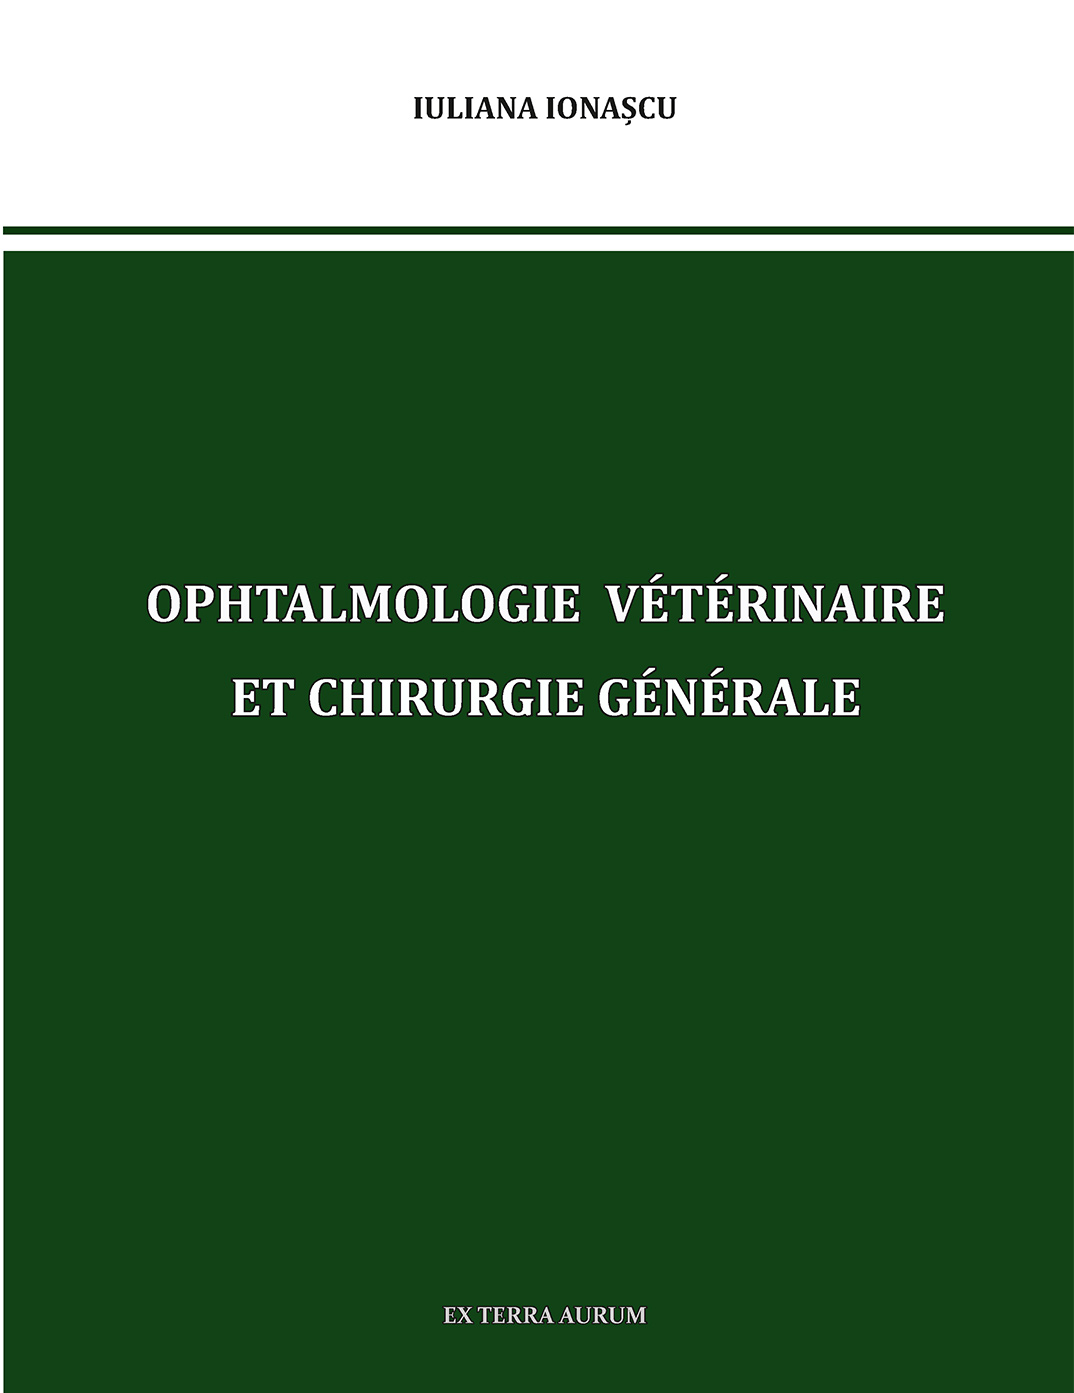 Ophtalmologie Vétérinaire et Chirurgie Générale